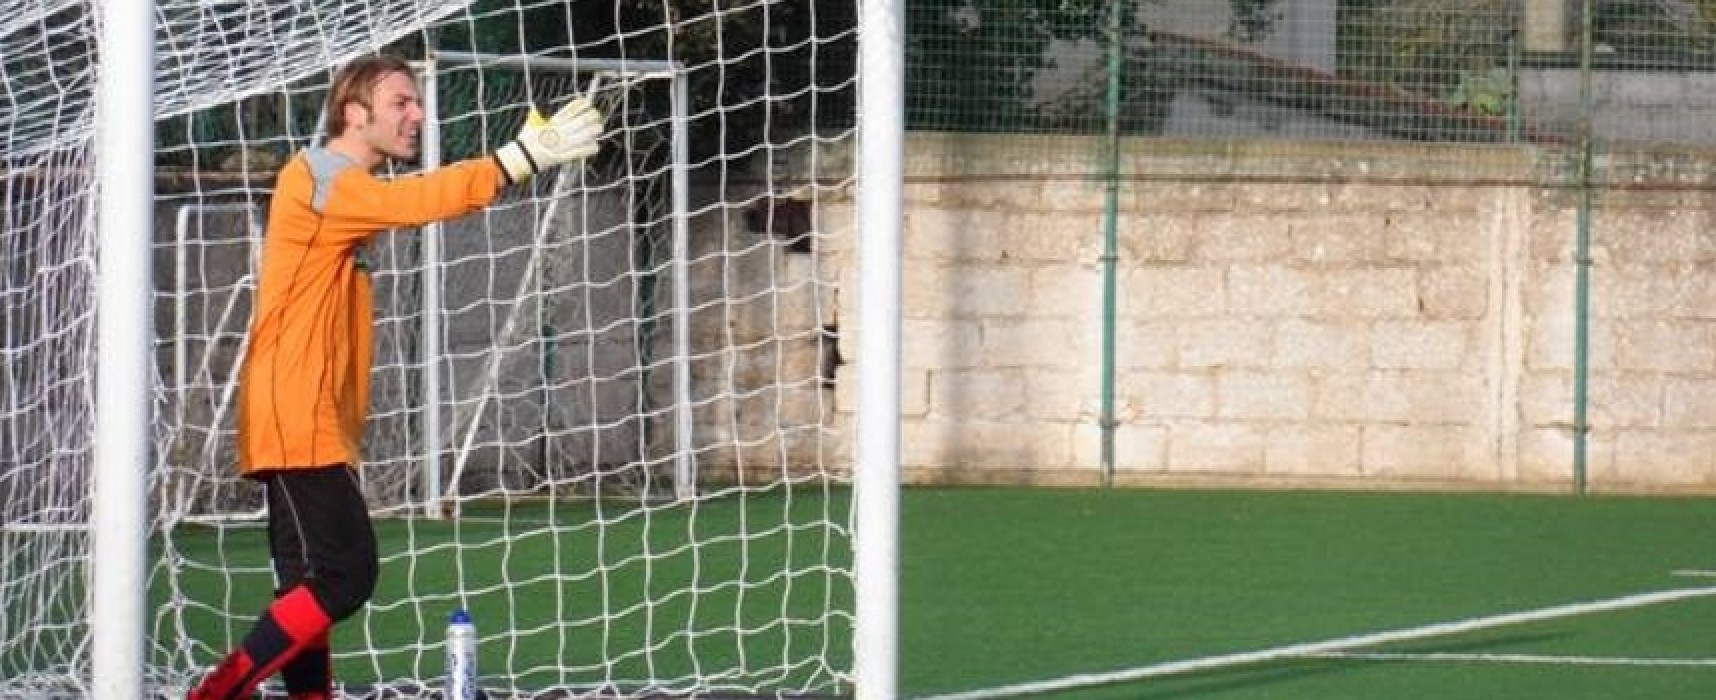 Unione Calcio, Napoletano: “A Bitritto 3 punti per continuare nel nostro cammino”